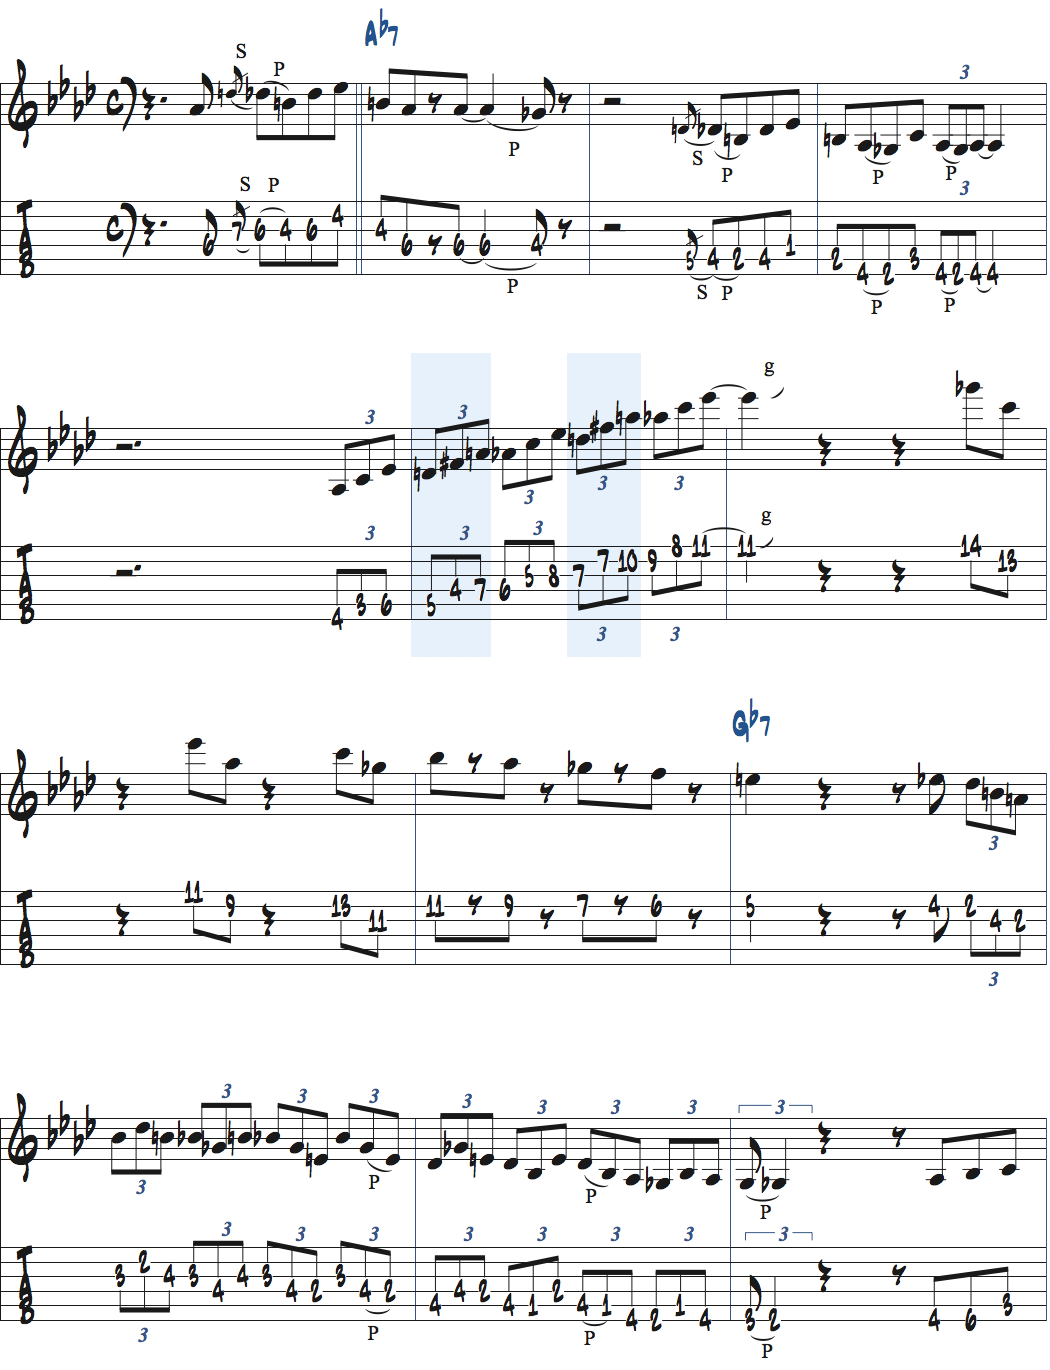 裏コードを想定したアドリブ例楽譜ページ1